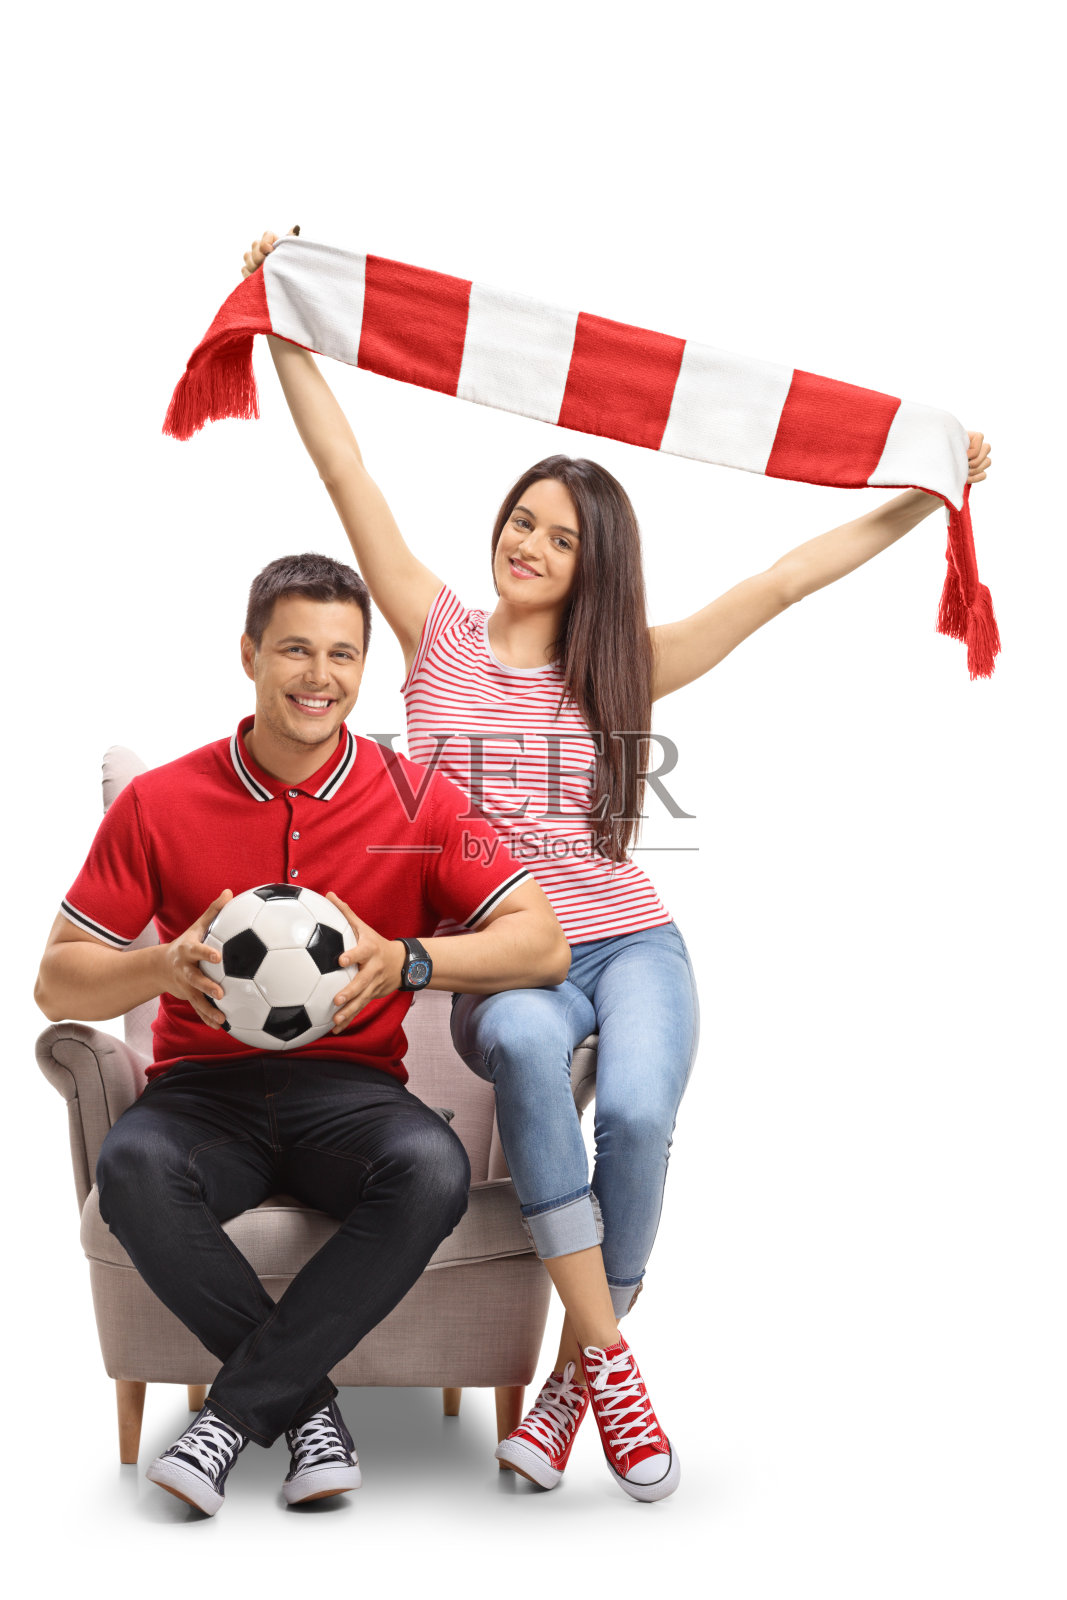 兴高采烈的球迷拿着足球和围巾坐在扶手椅上照片摄影图片